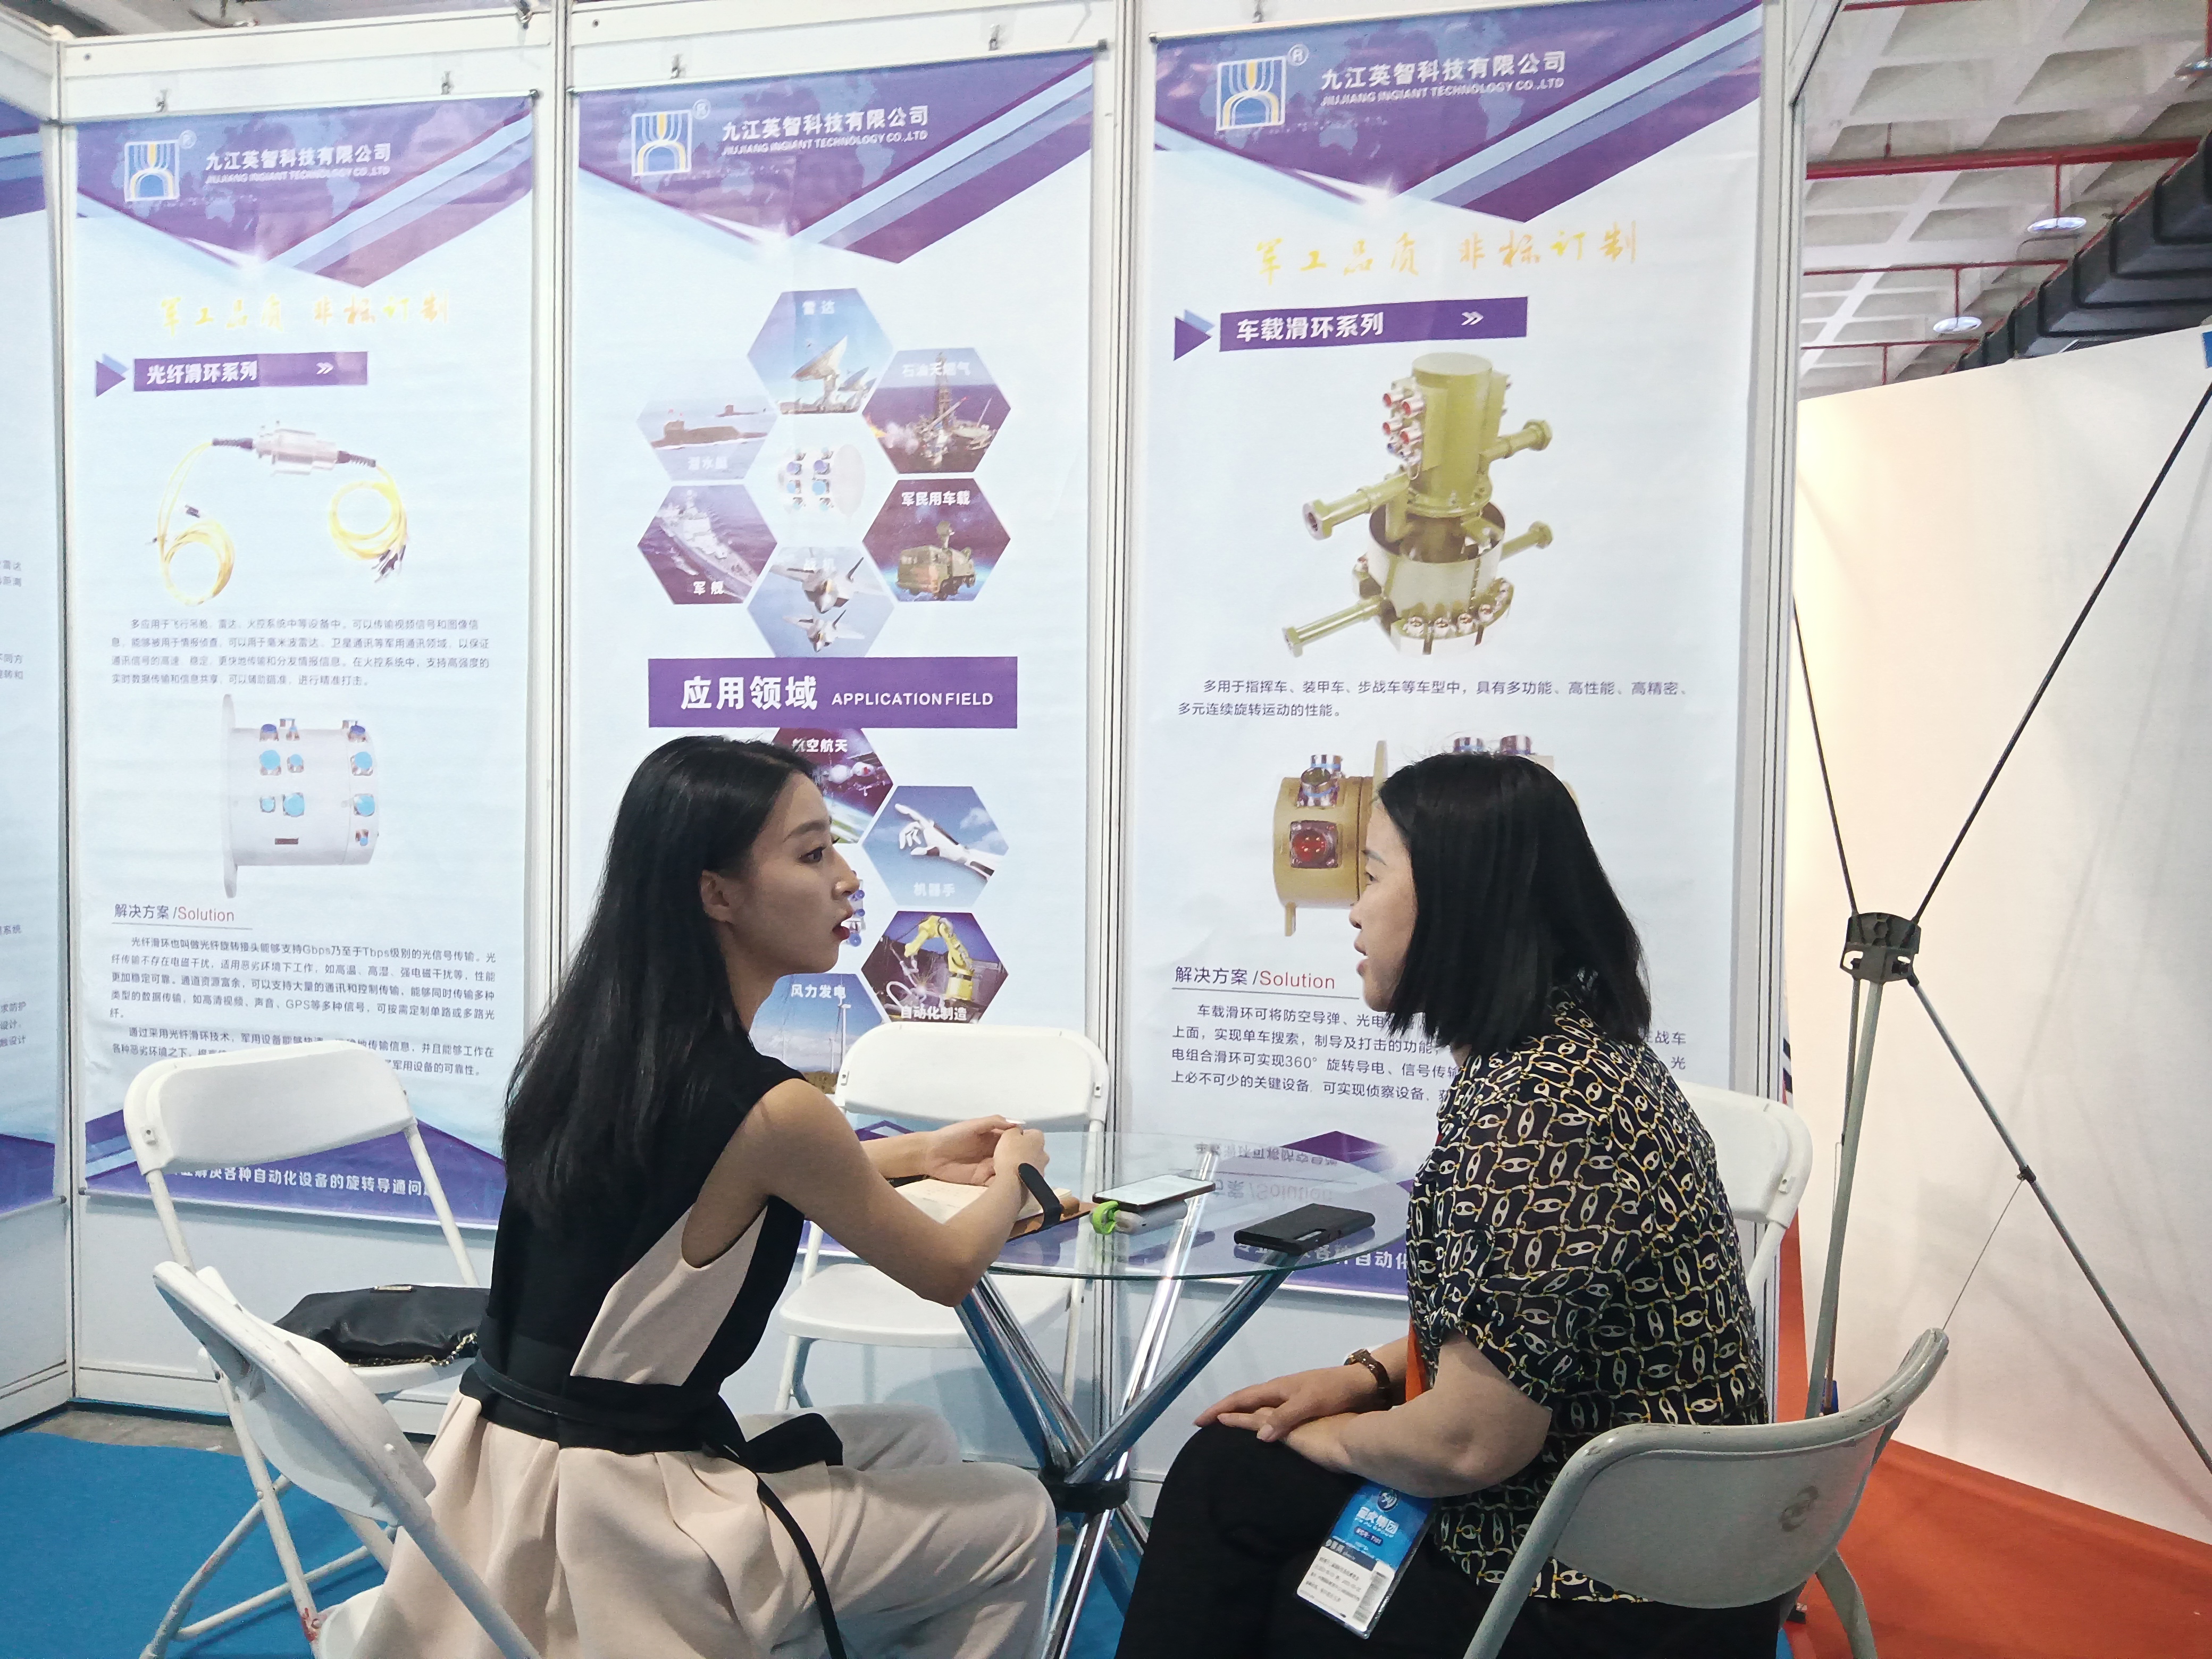 英智科技在第十二届中国国防信息化装备与技术博览会与客户交谈